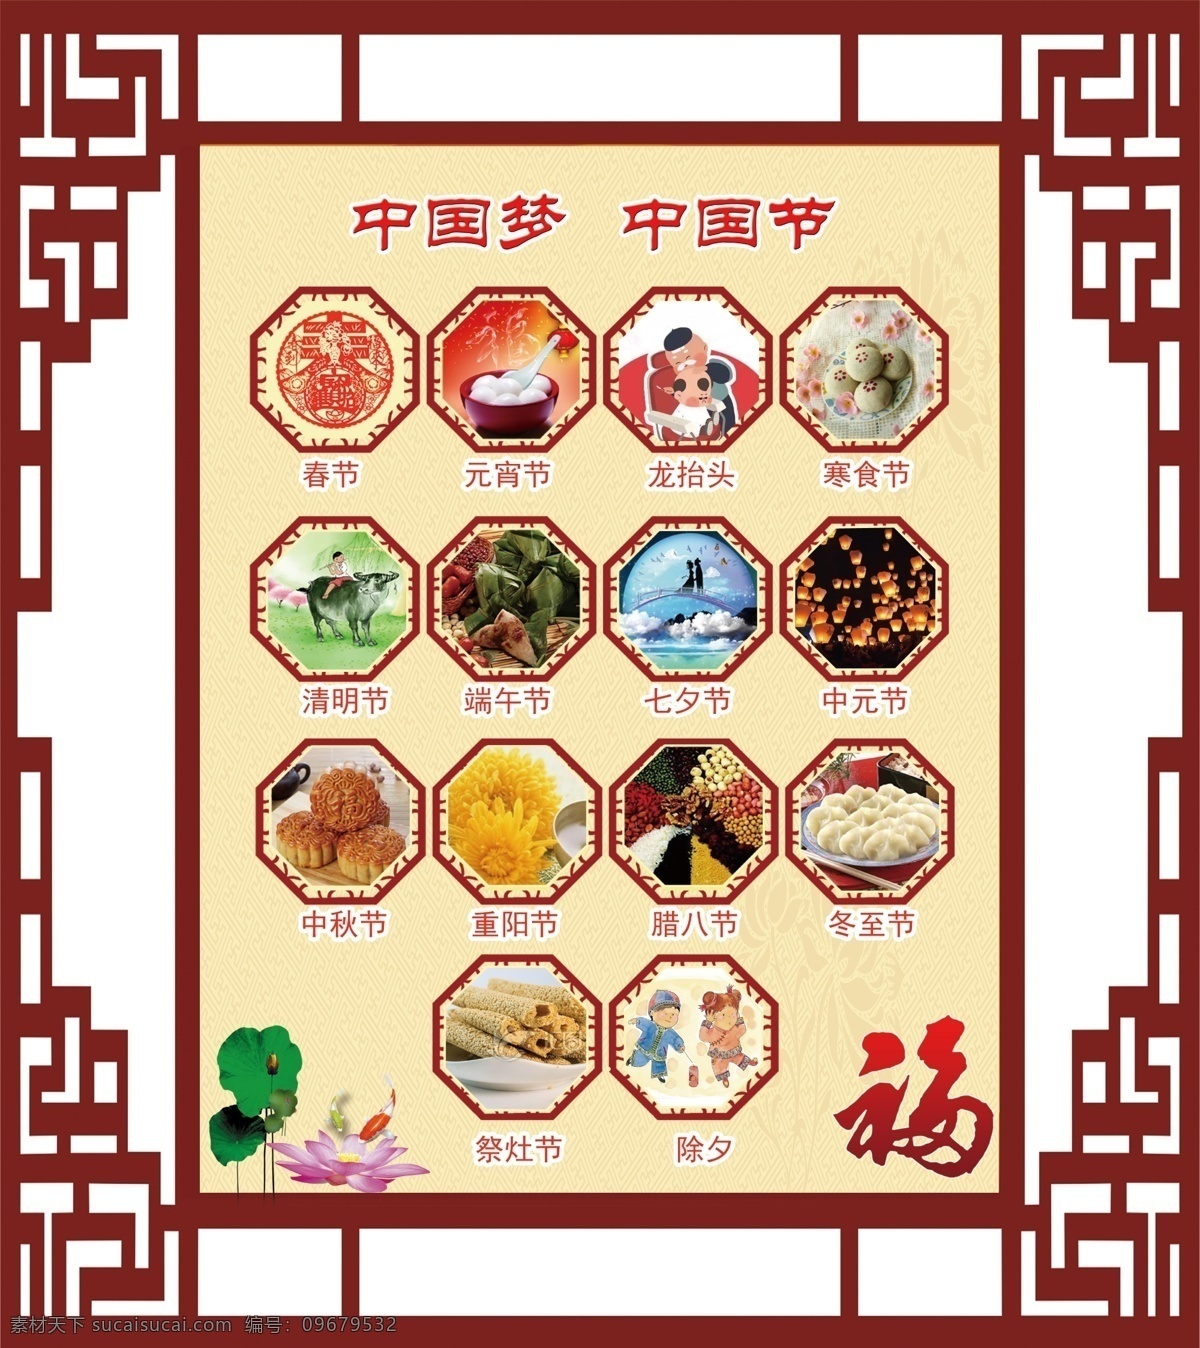 中国 传统节日 中国传统节日 图画介绍 古典中国风